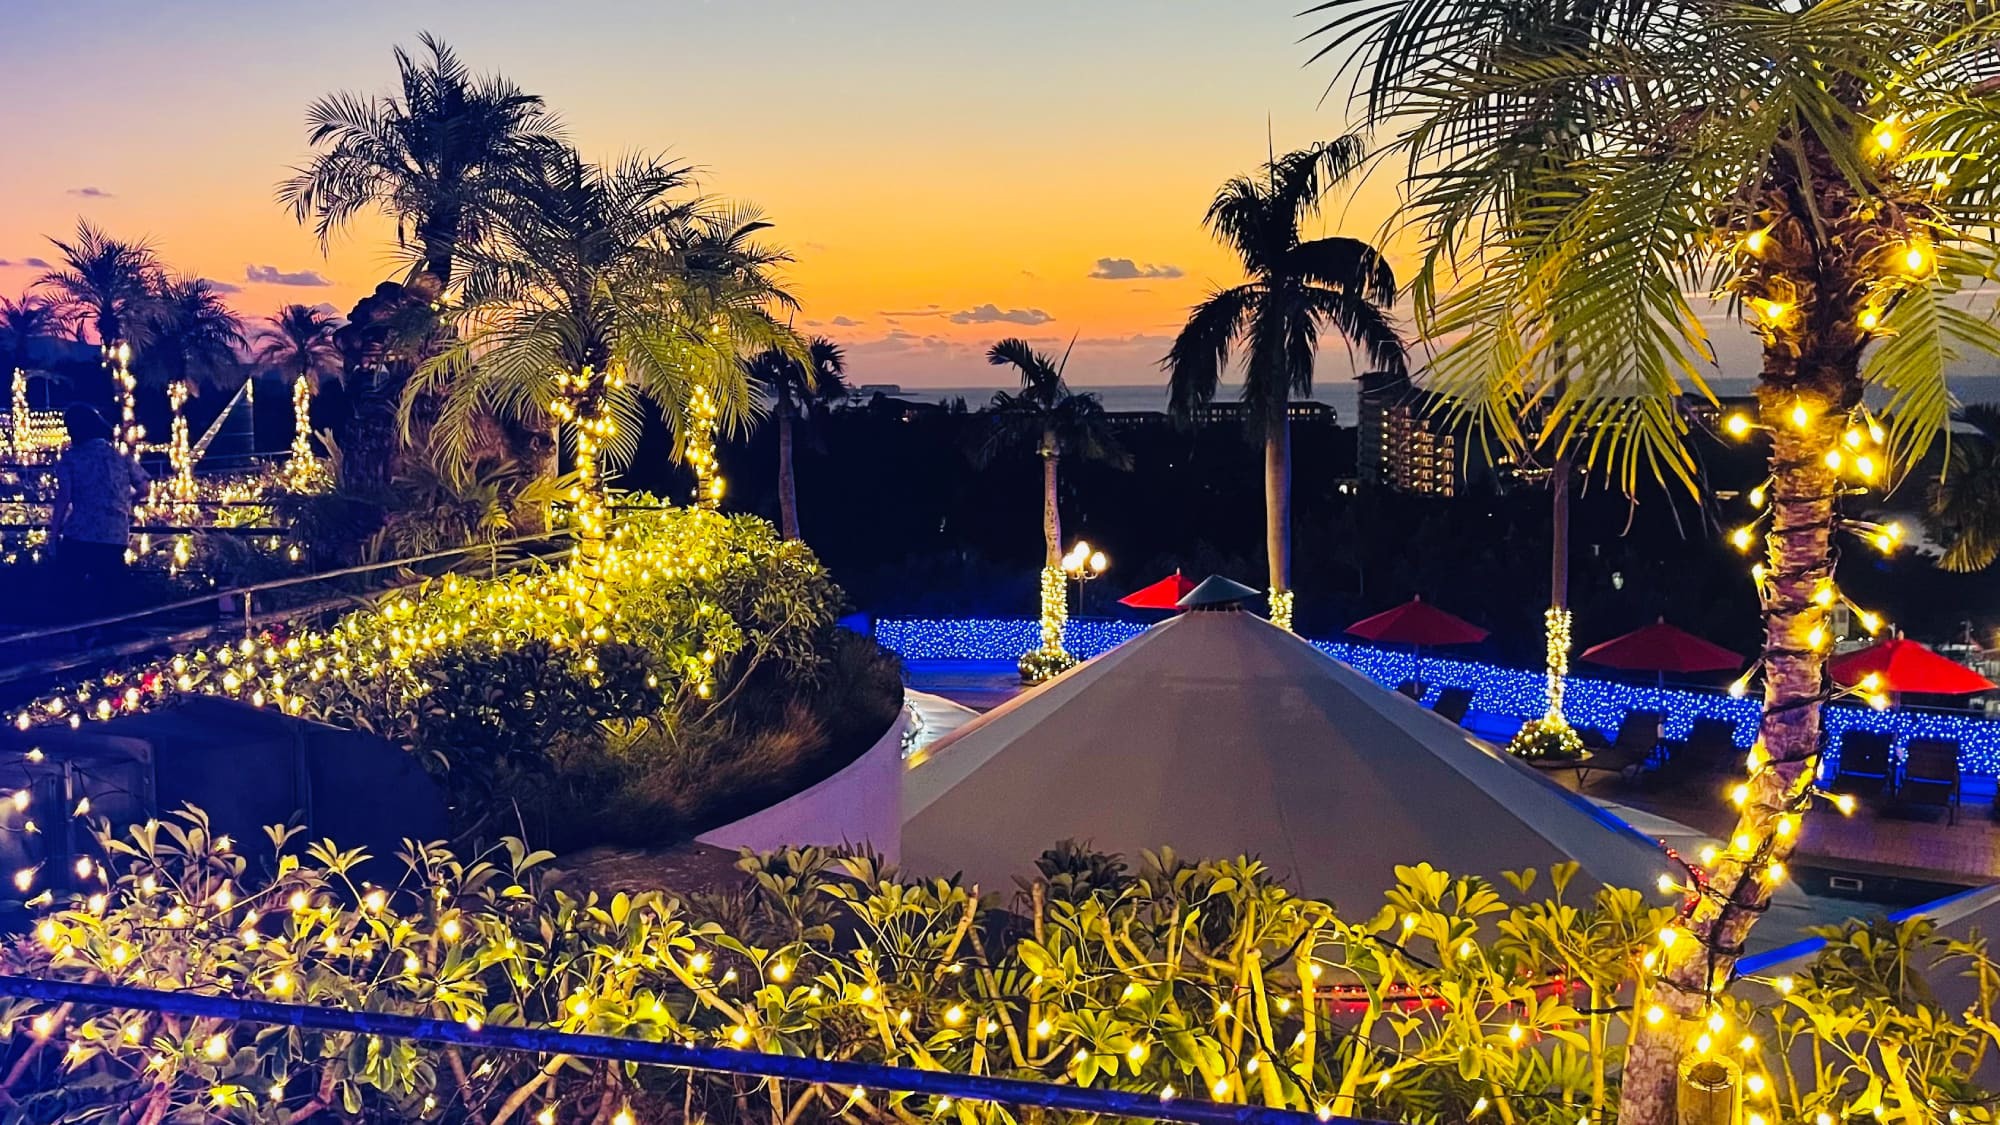 ムード満点美しい東シナ海の夕焼けと【期間限定】イルミネーションをお楽しみください。